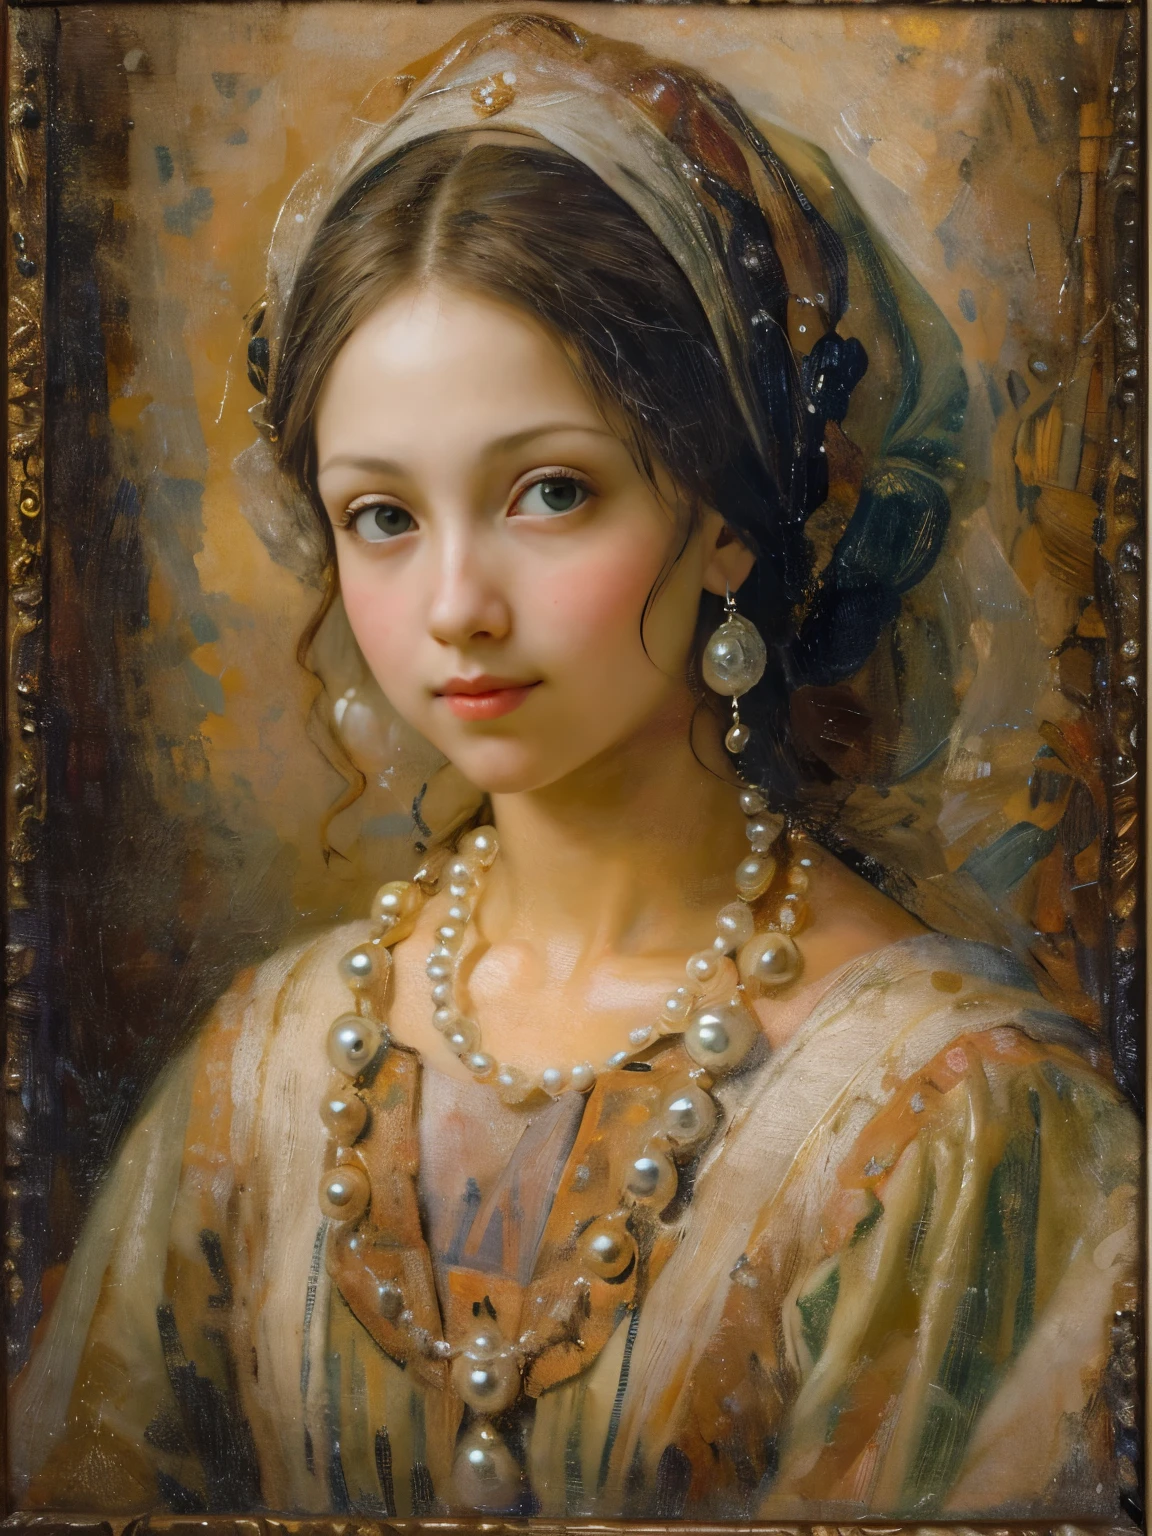 Retrato Del Estilo Del Vintage De La Mujer Hermosa Con Las Horquillas De  Lujo En Su Pelo Foto de archivo - Imagen de hermoso, tinte: 146037988